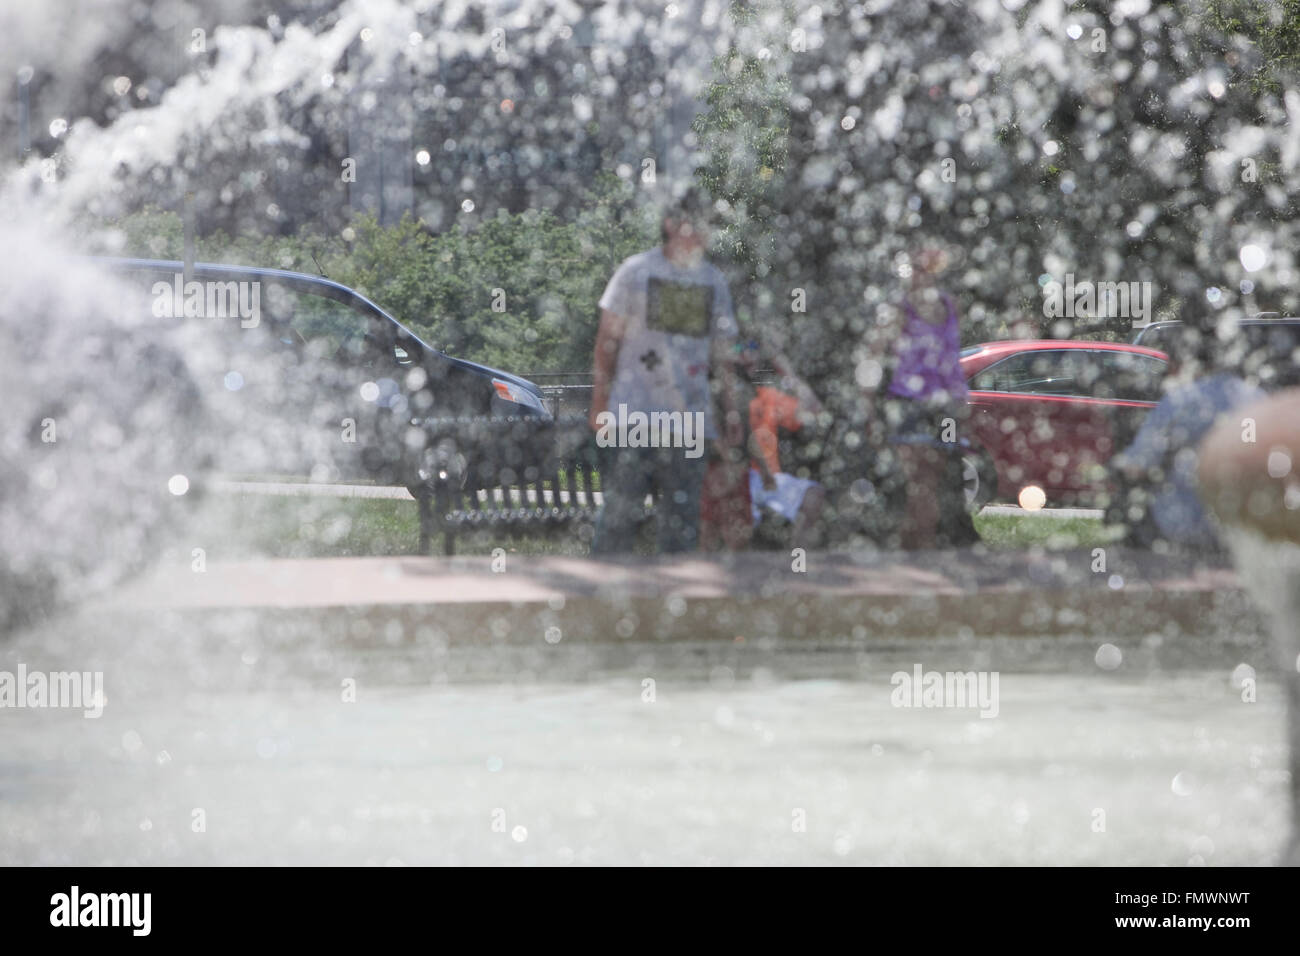 Los residentes de la ciudad de Kansas en el Country Club Plaza's, JC Nicholds Conmemorativo Fuente durante una advertencia de calor excesivo. Foto de stock